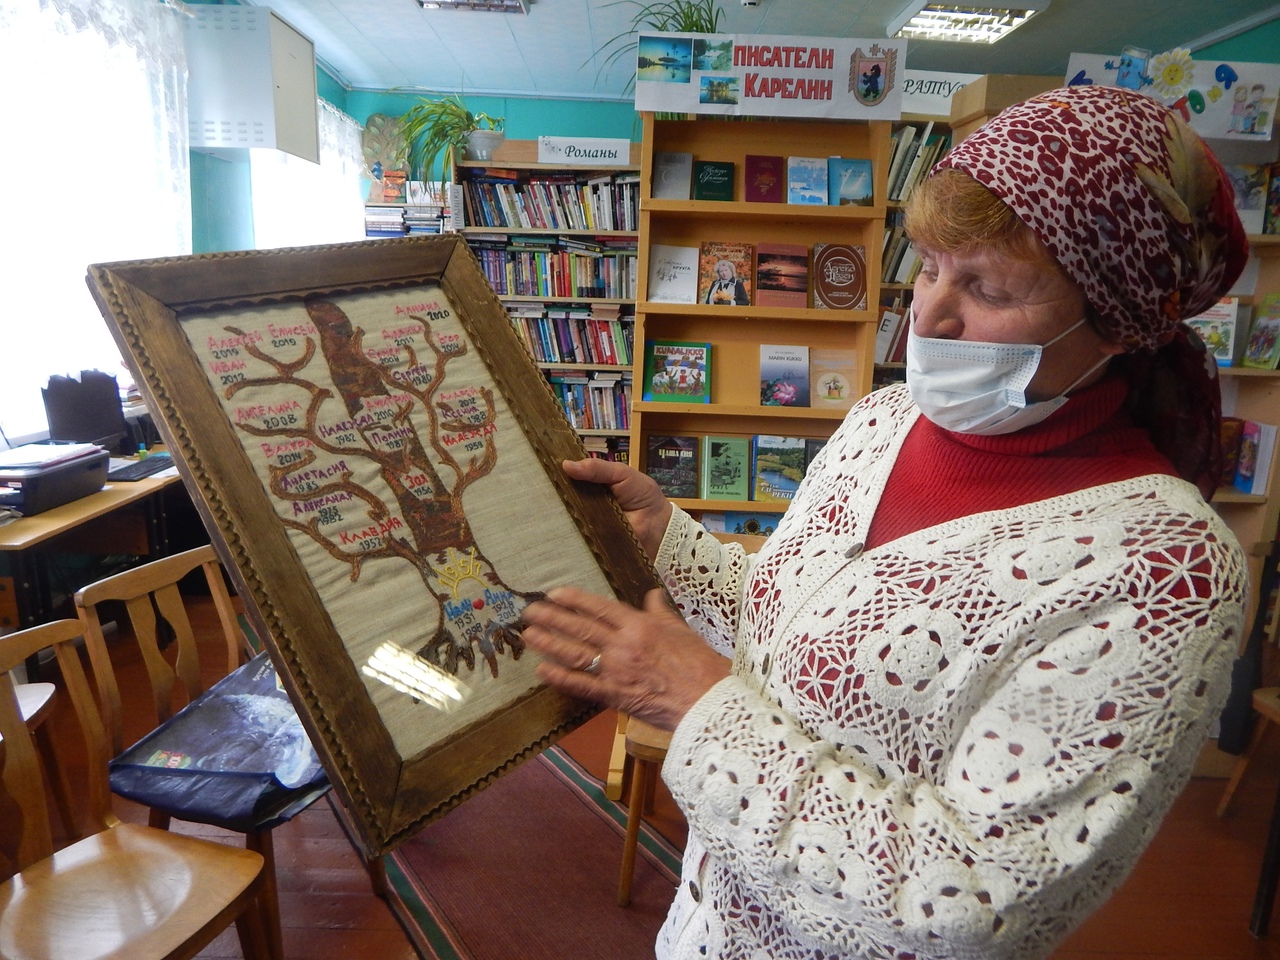 Vieljärveläine Nadežda Zaitseva on kirjoindannuh oman sugupuun. Nenga se parembi säilyy. Kuva on otettu vk.com/elamakeskus